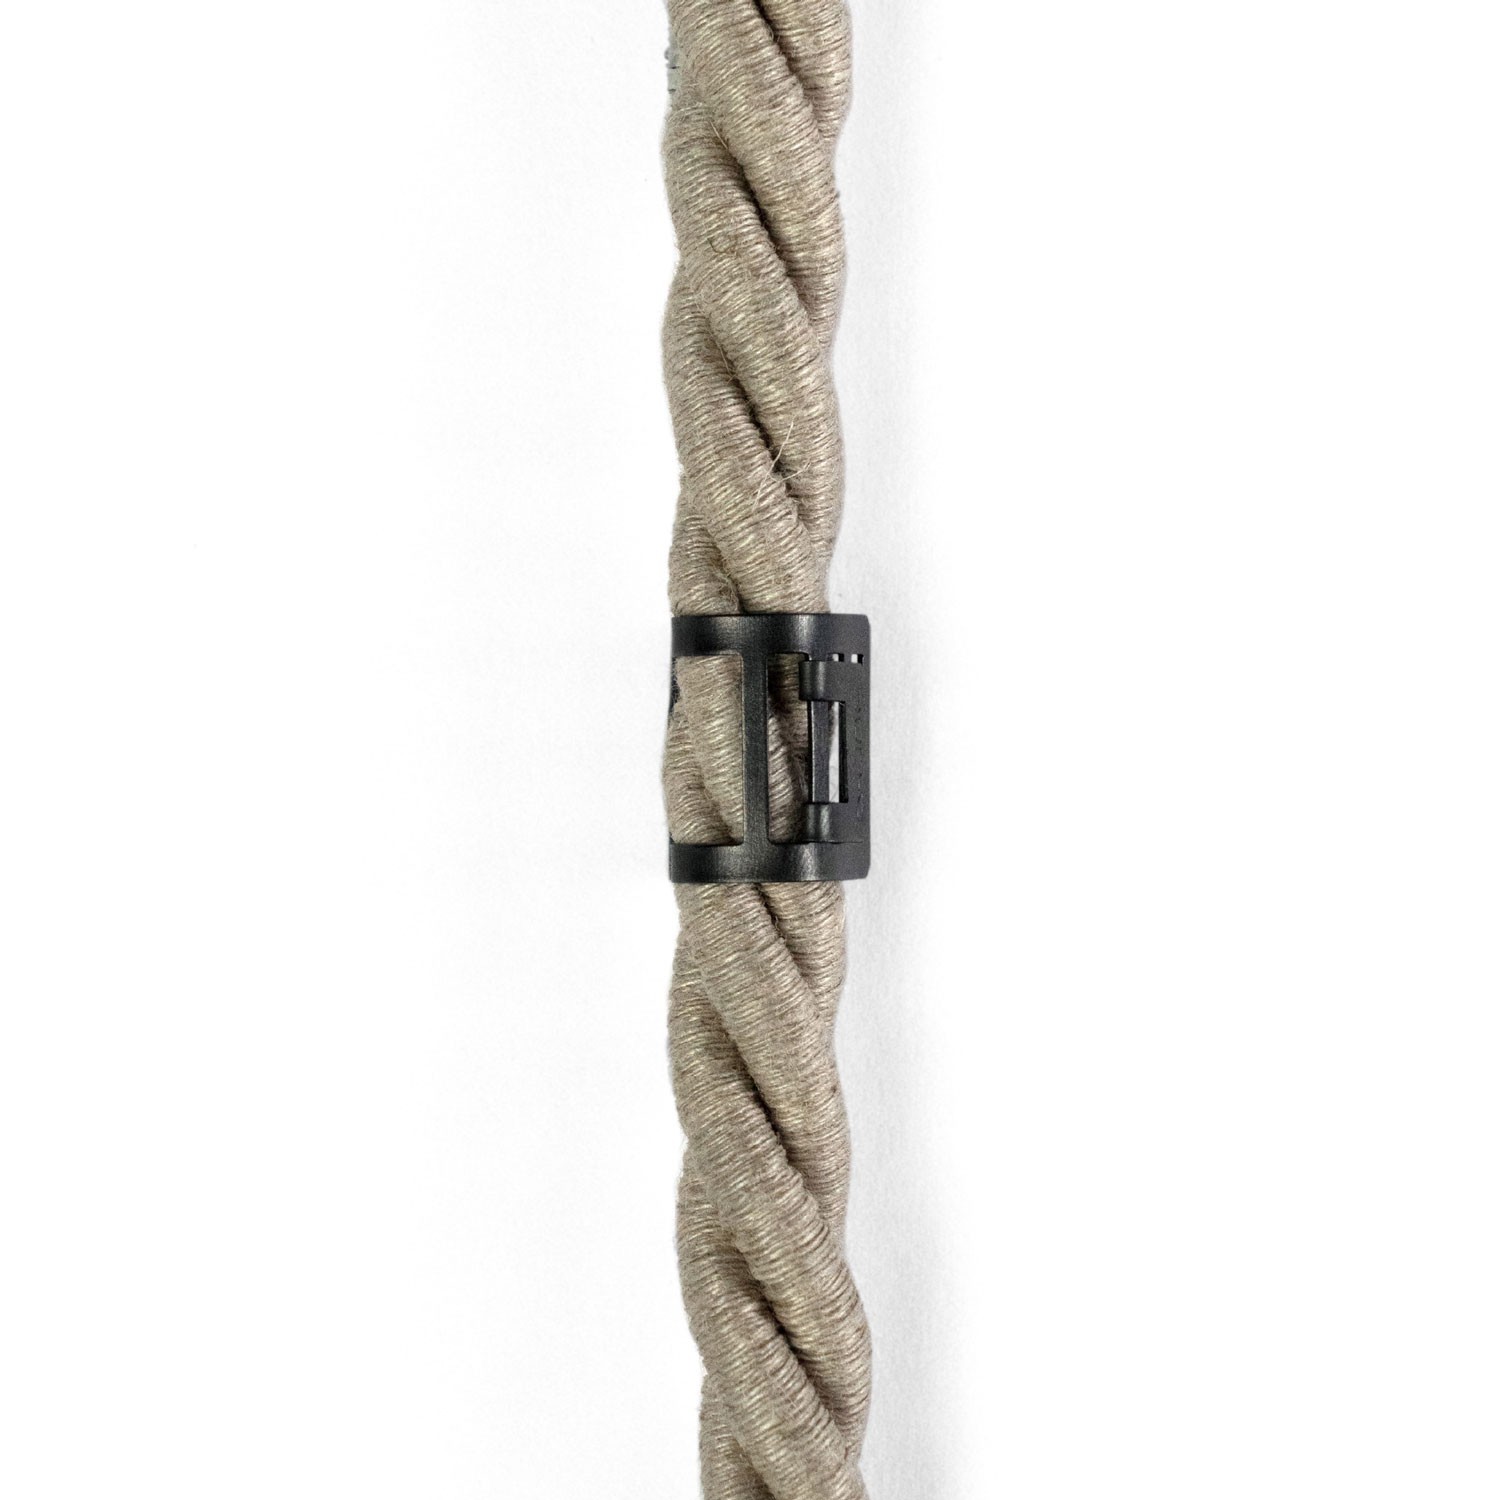 Verstellbare Kabelklemme aus Metall für Tauseile mit 16 mm Durchmesser